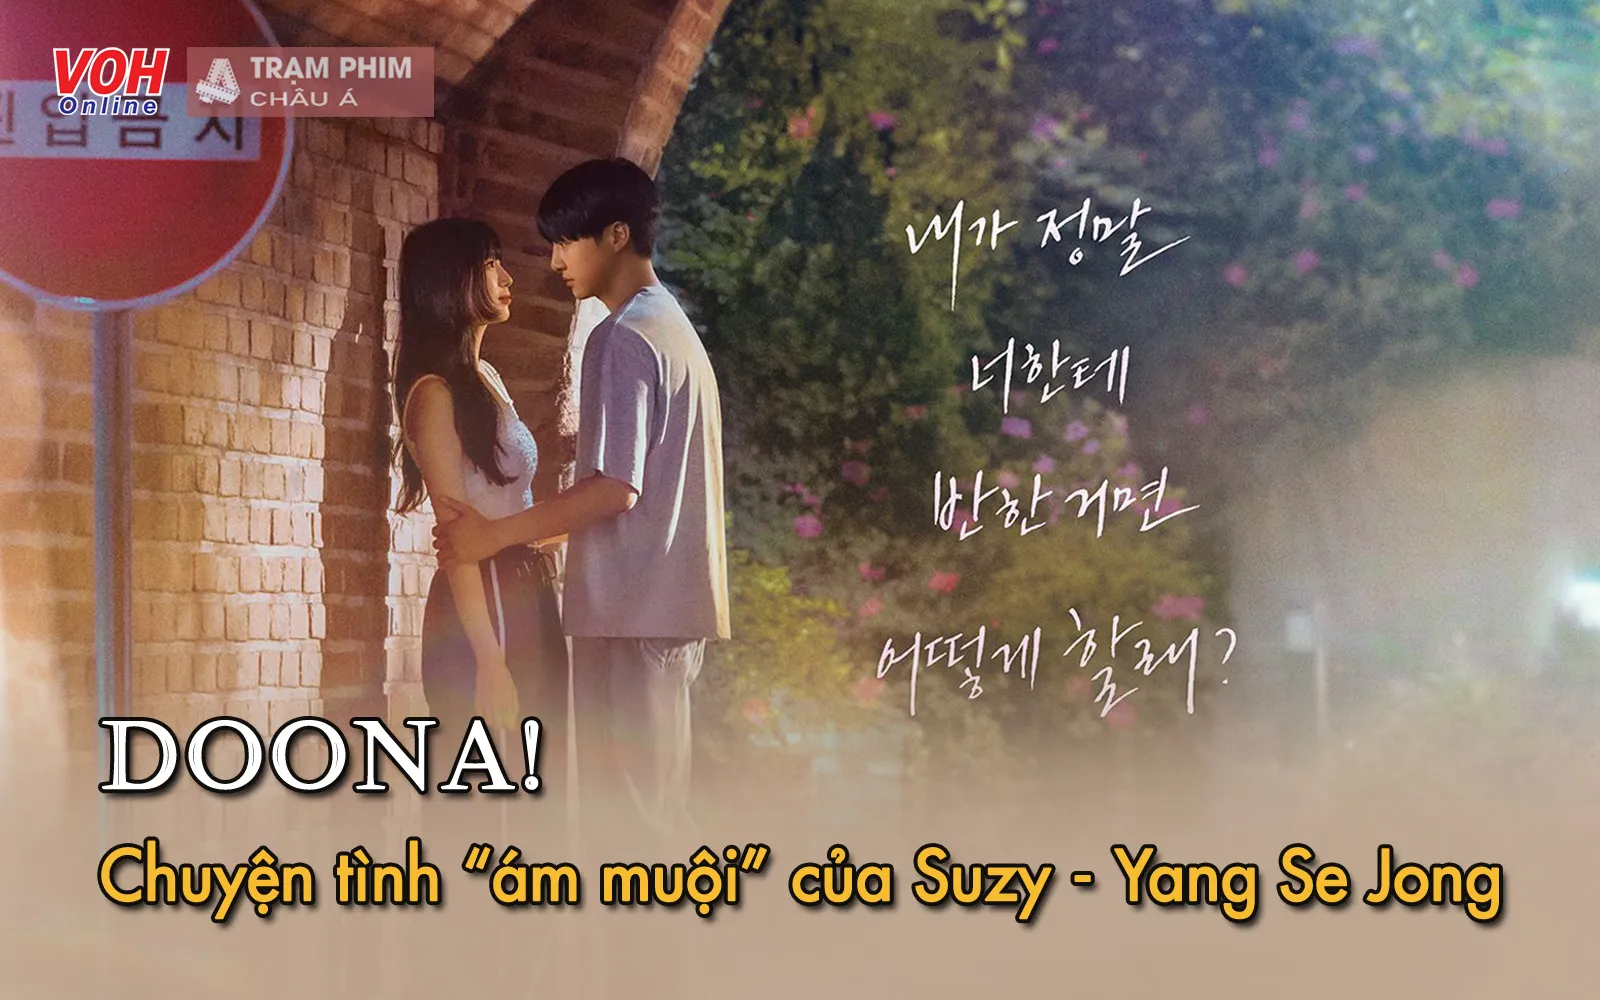 Doona!, Suzy - Yang Se Jong ngọt ngào và &quot;ám muội&quot; trong teaser đầu tiên